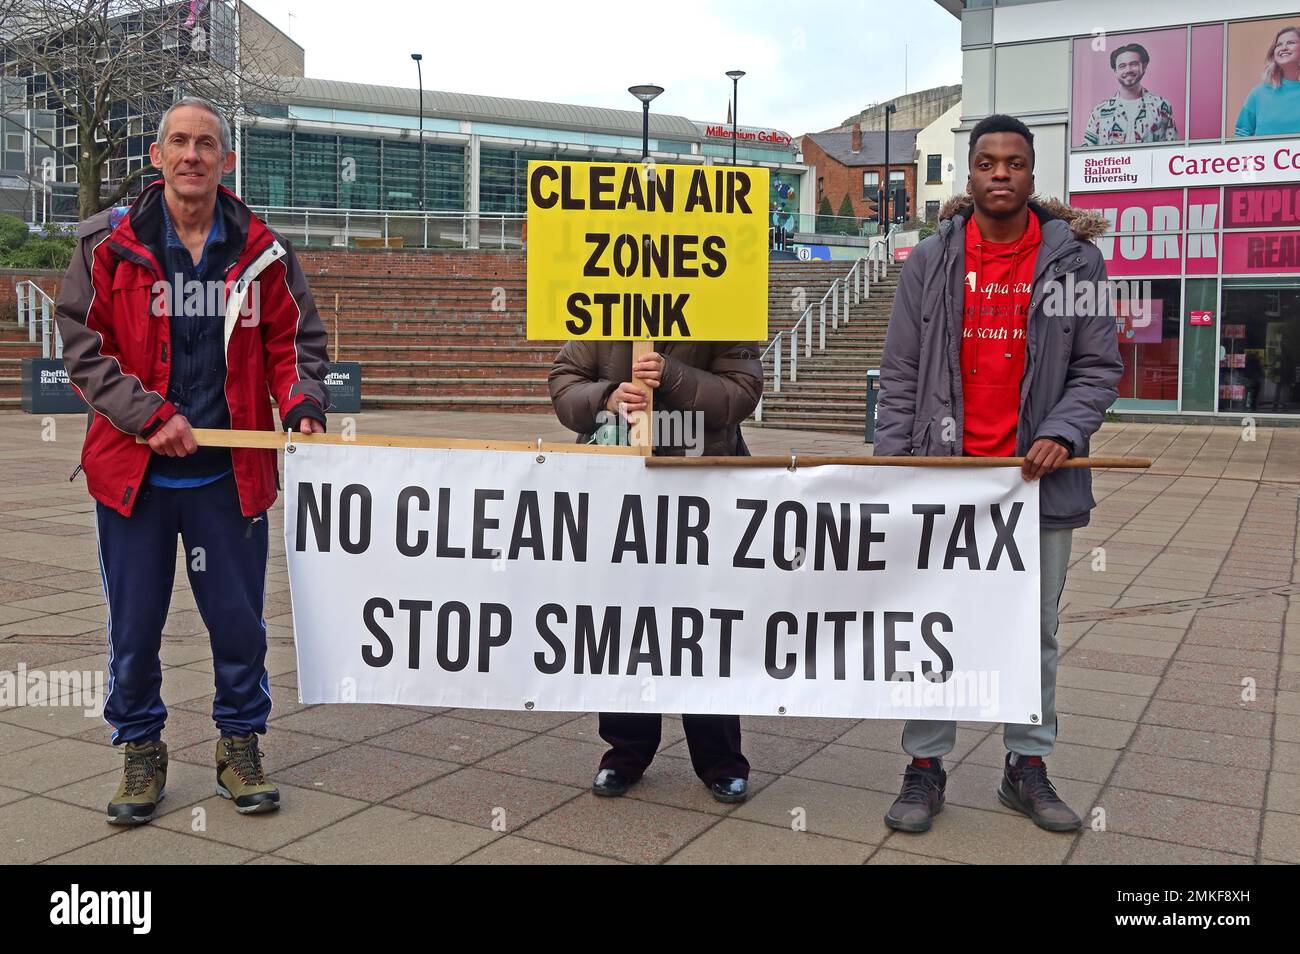 Sheffield Clean Air Zone, ab 27. Februar 2023 - Clean Air Zones Stink Schild - Demonstranten Keine Clean Air Zone Steuer - Stop Smart Cities - CAZ Stockfoto